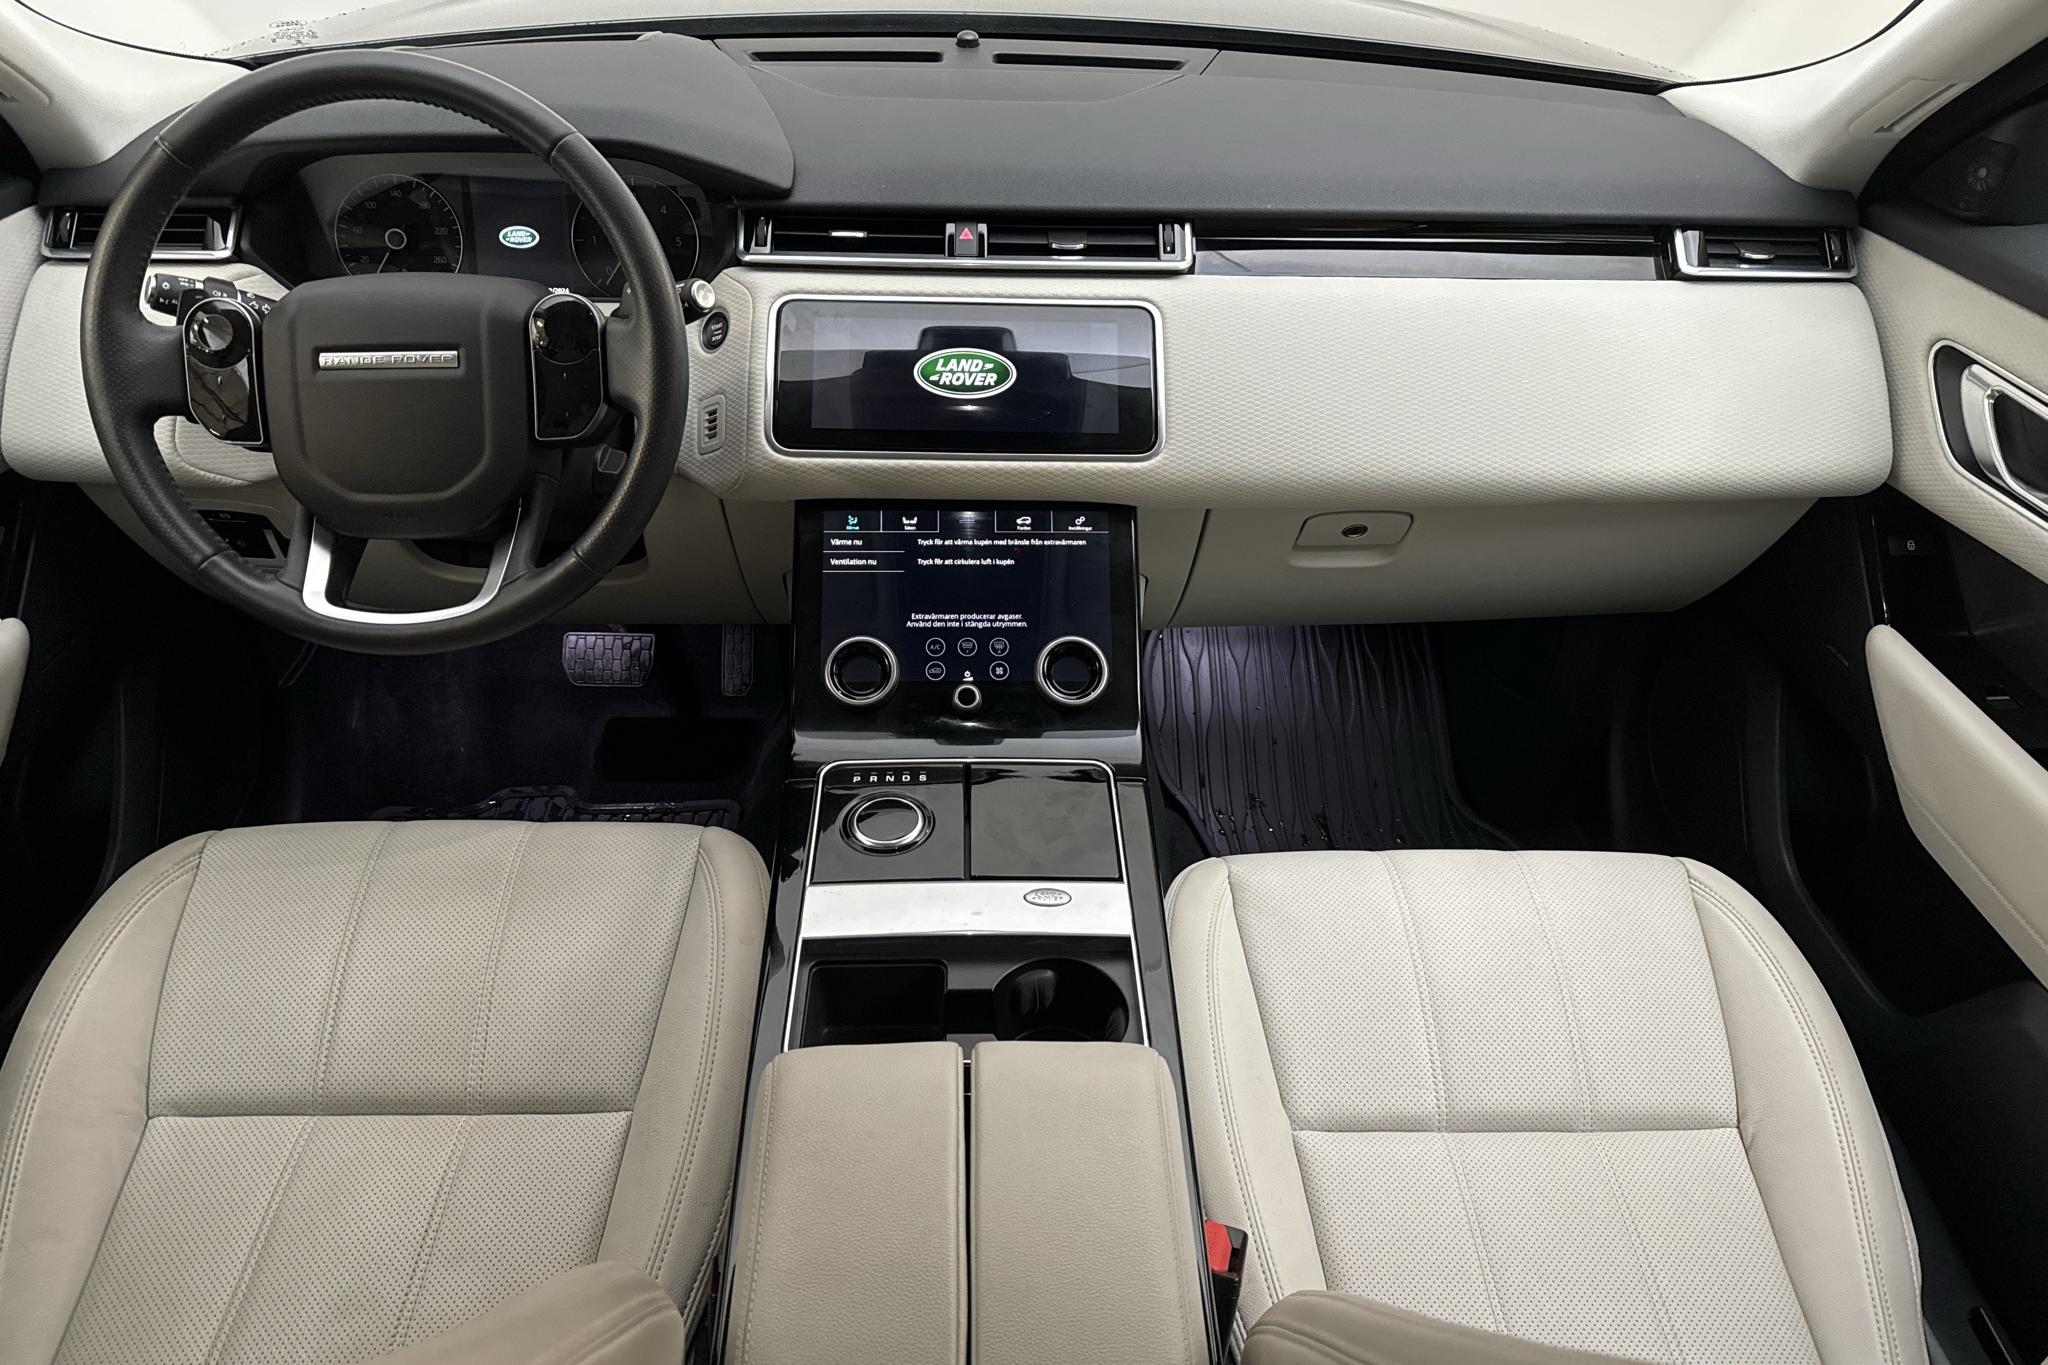 Land Rover Range Rover Velar 2.0 D240 (240hk) - 3 993 mil - Automat - svart - 2018